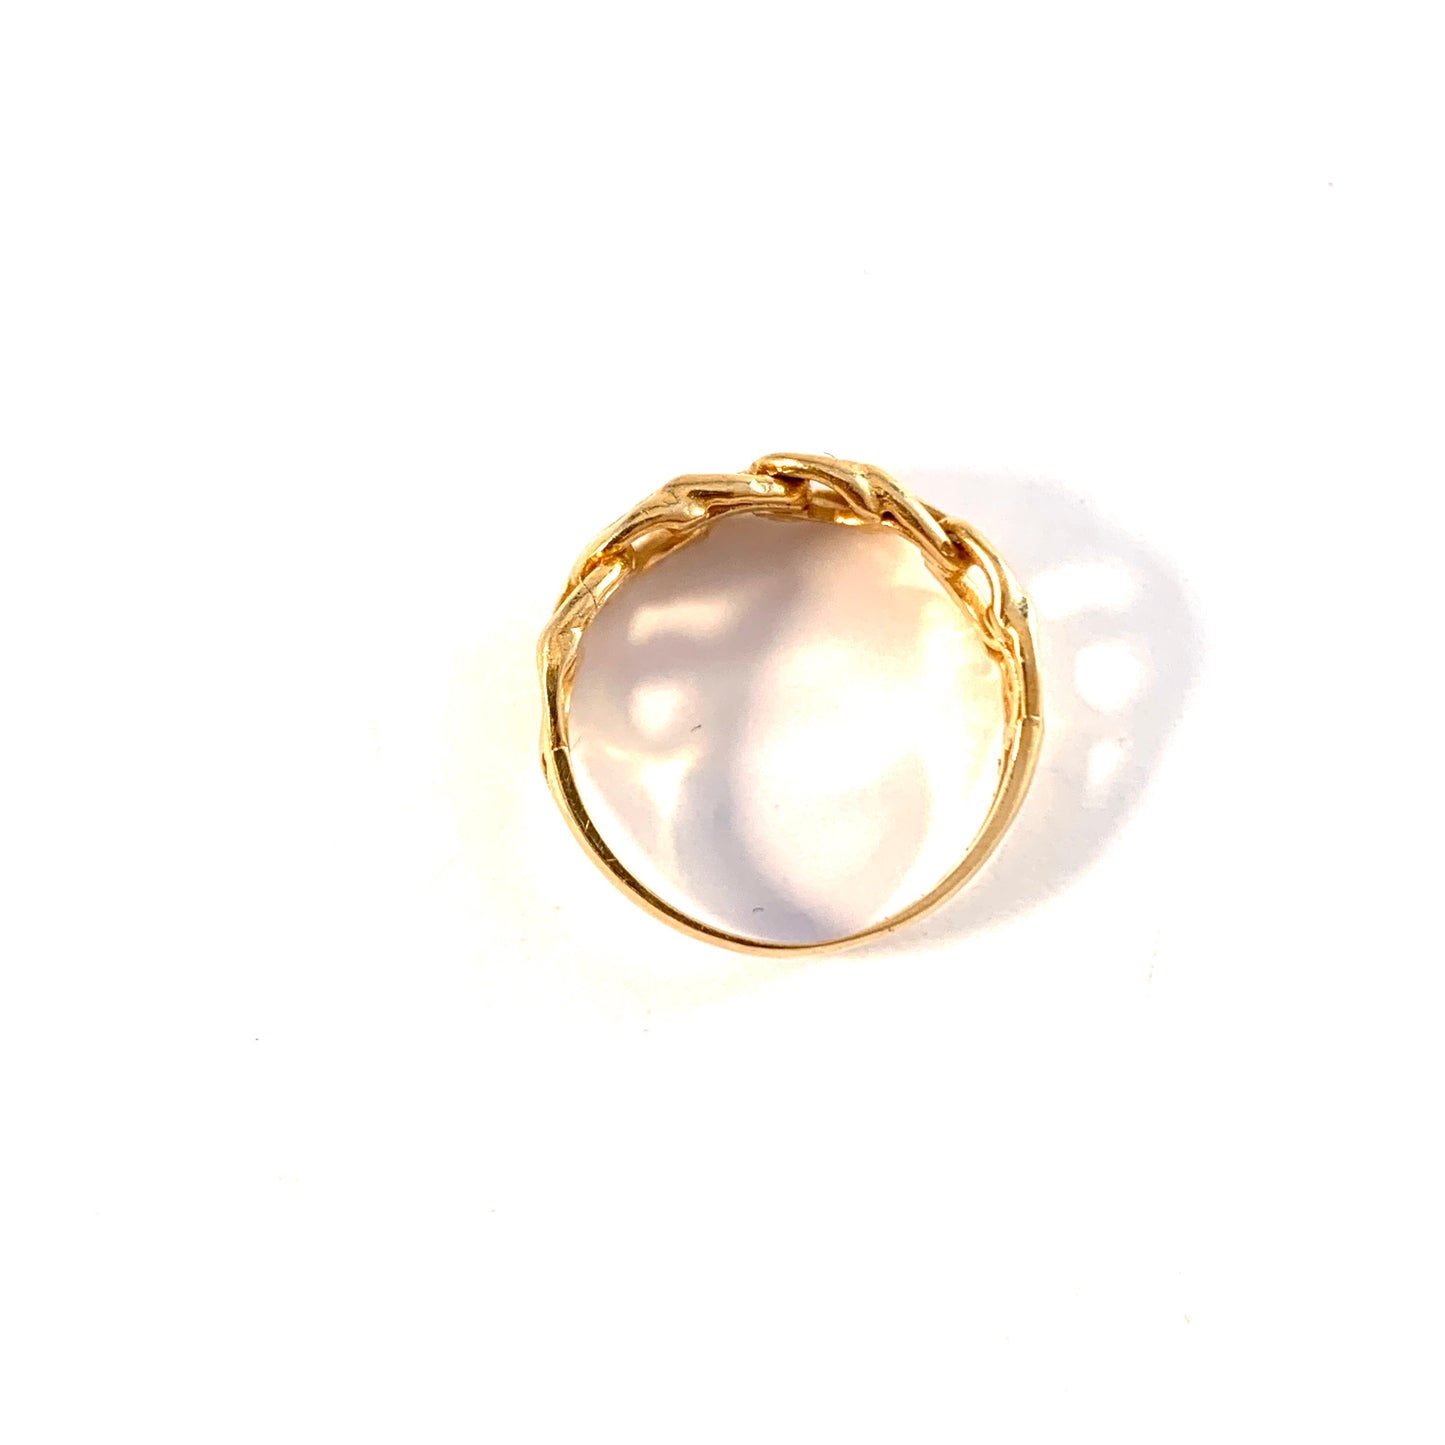 Wiktorsson, Sweden 1960s. Vintage 18k Gold Bismarck Ring.